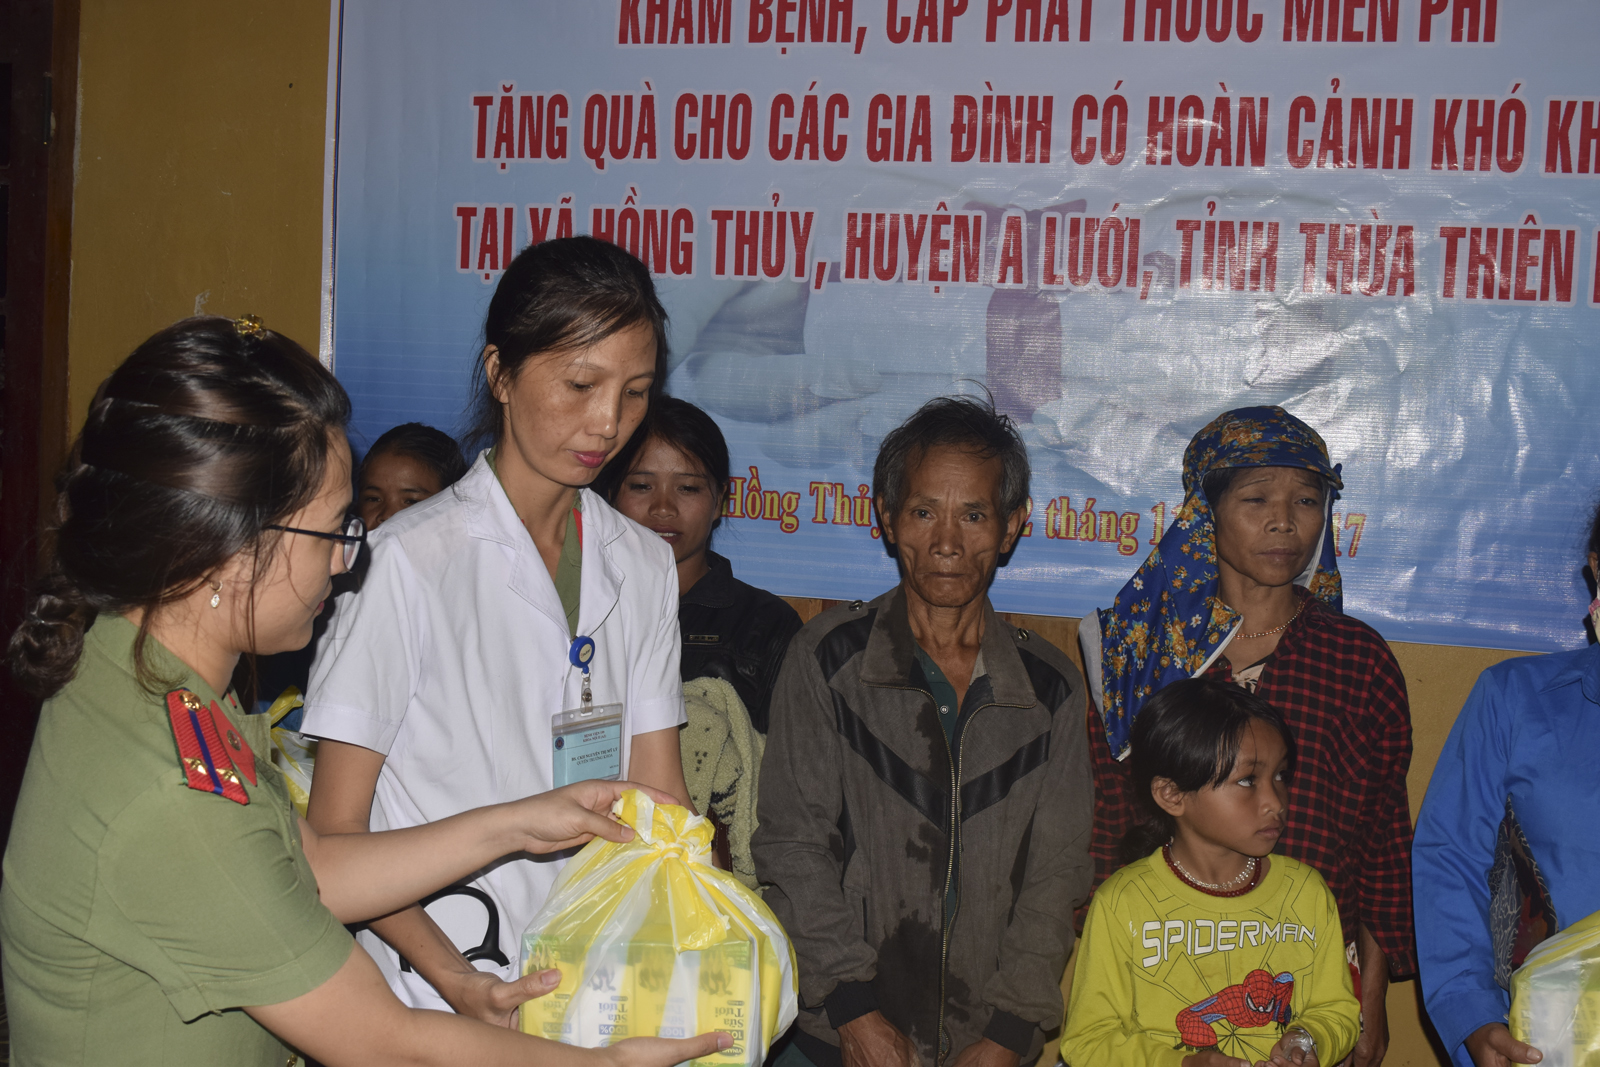 Thừa Thiên Huế: Bệnh viện 199 khám bệnh và cấp phát thuốc miễn phí tại A Lưới - Hình 1